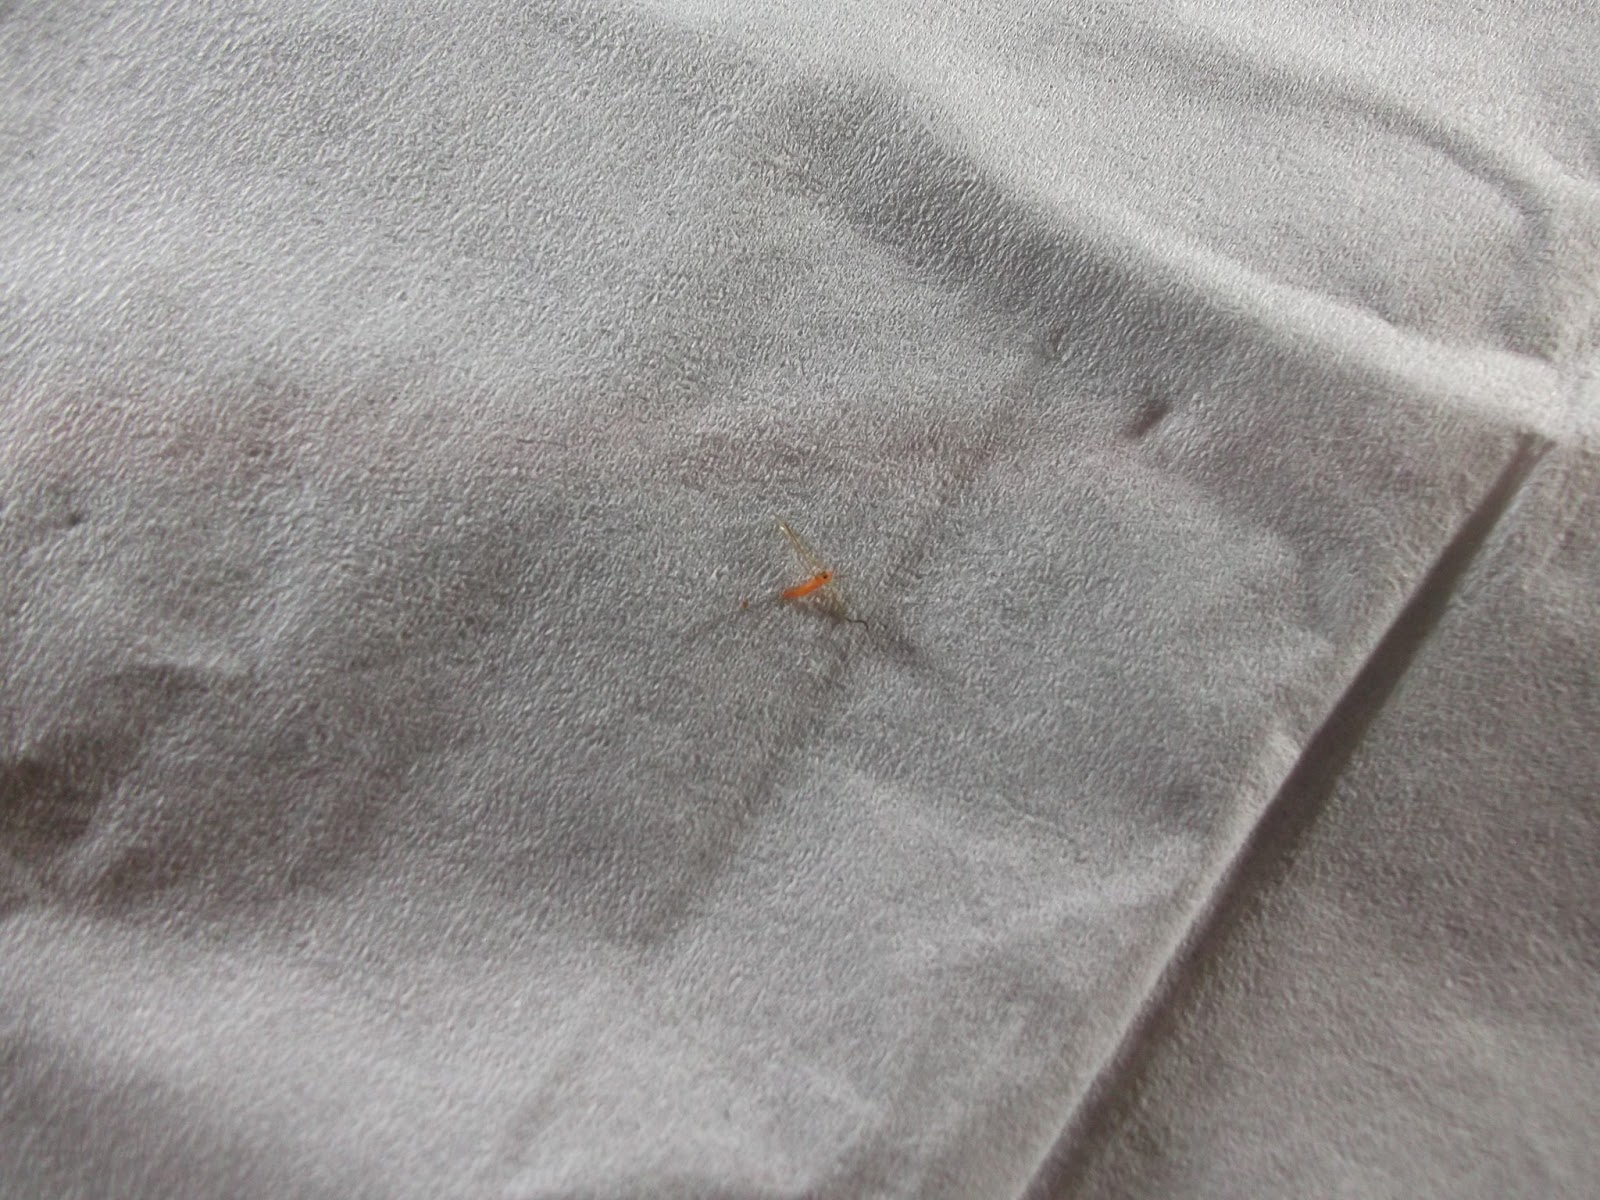 I Found A Tiny Orange Mosquito